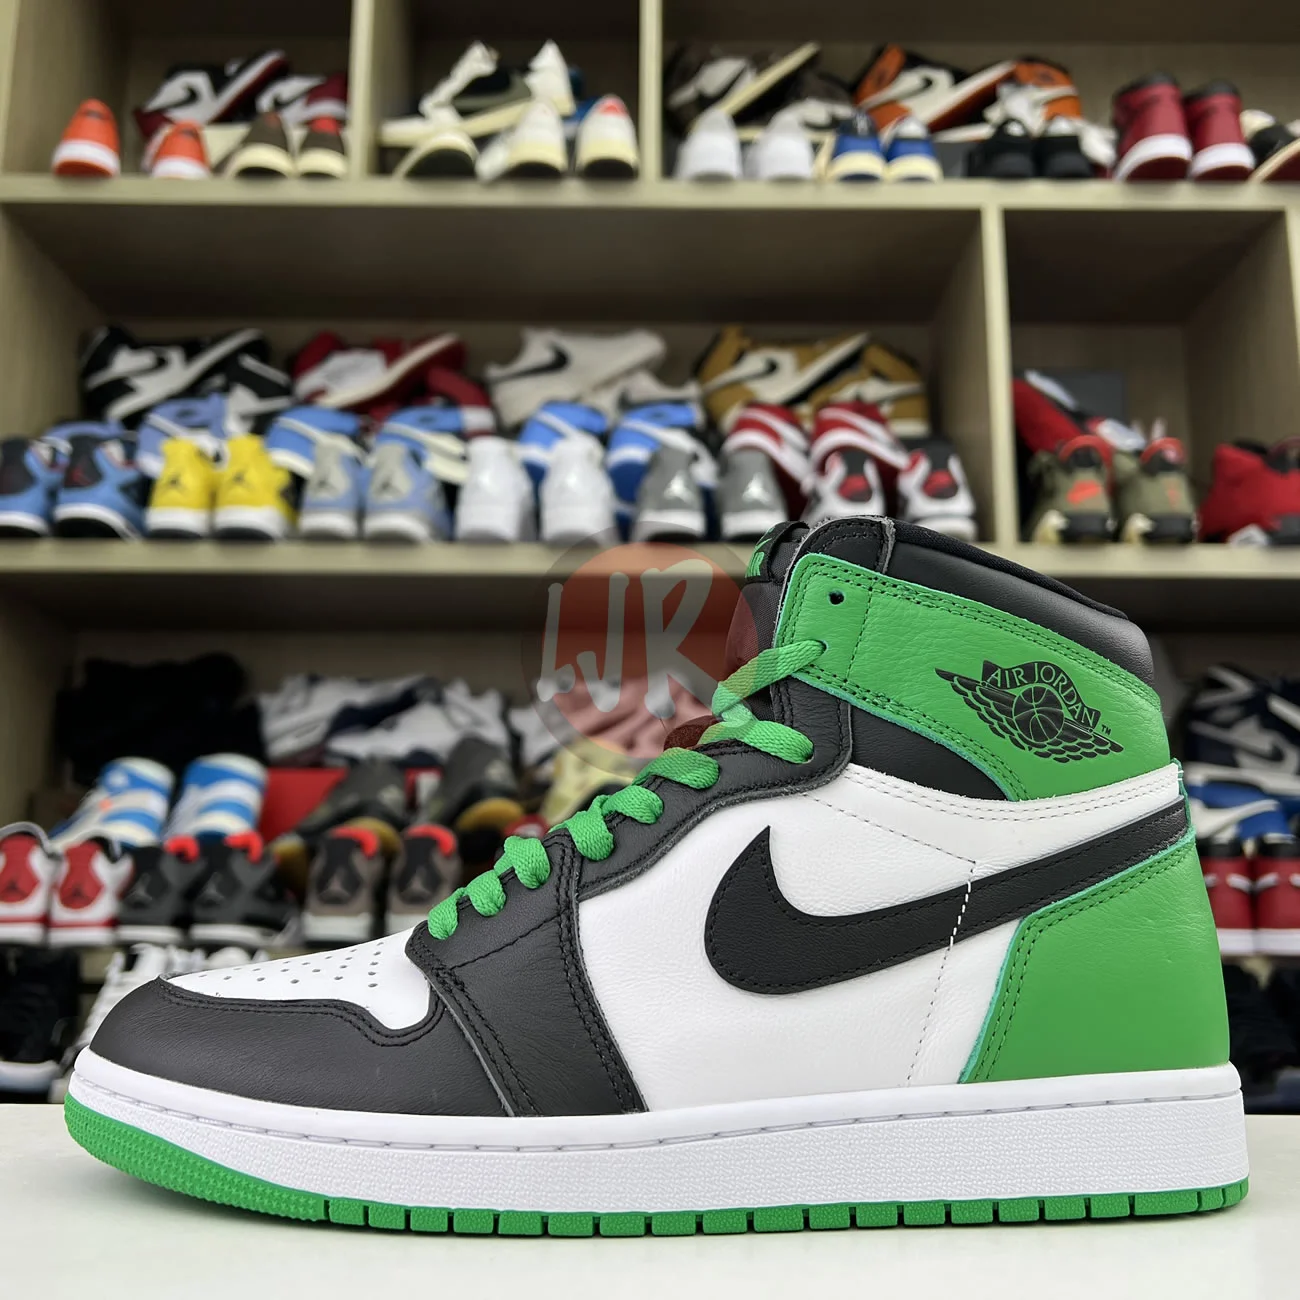 Air Jordan 1 Retro High Og Lucky Green Dz5485 031 Ljr Sneakers (19) - bc-ljr.net